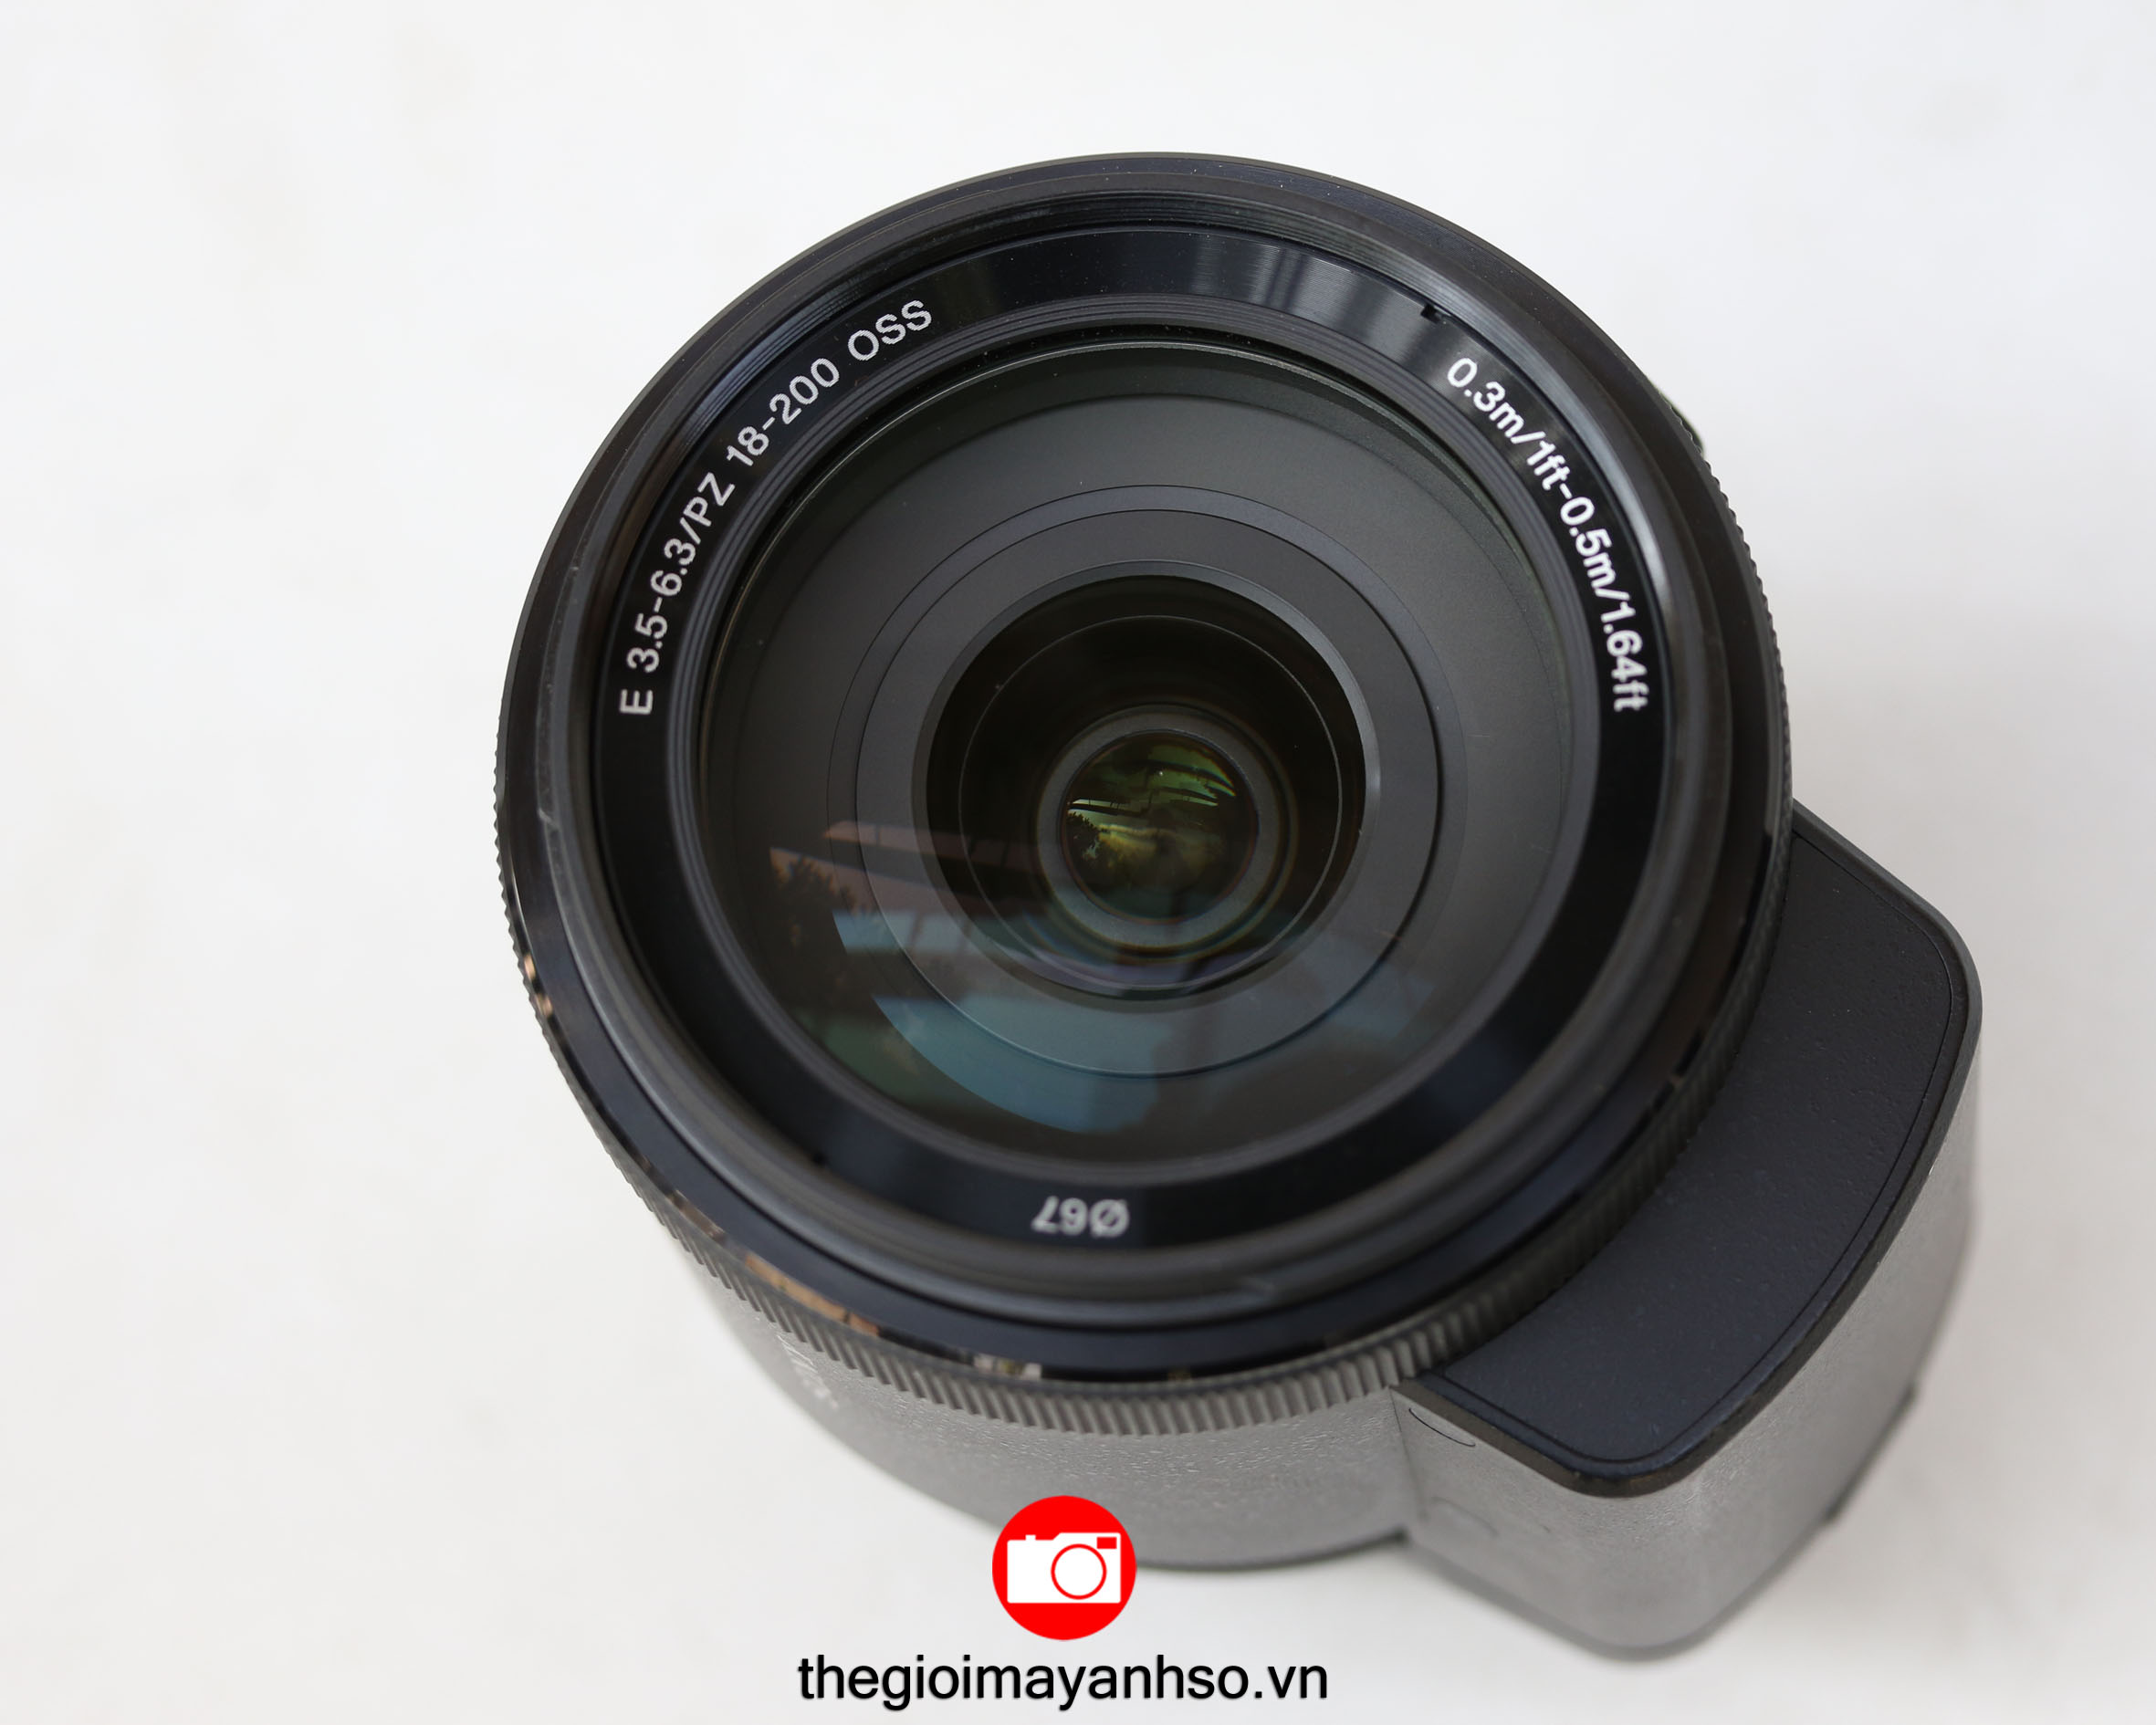 Sony E PZ 18-200mm f/3.5-6.3 OSS Lens